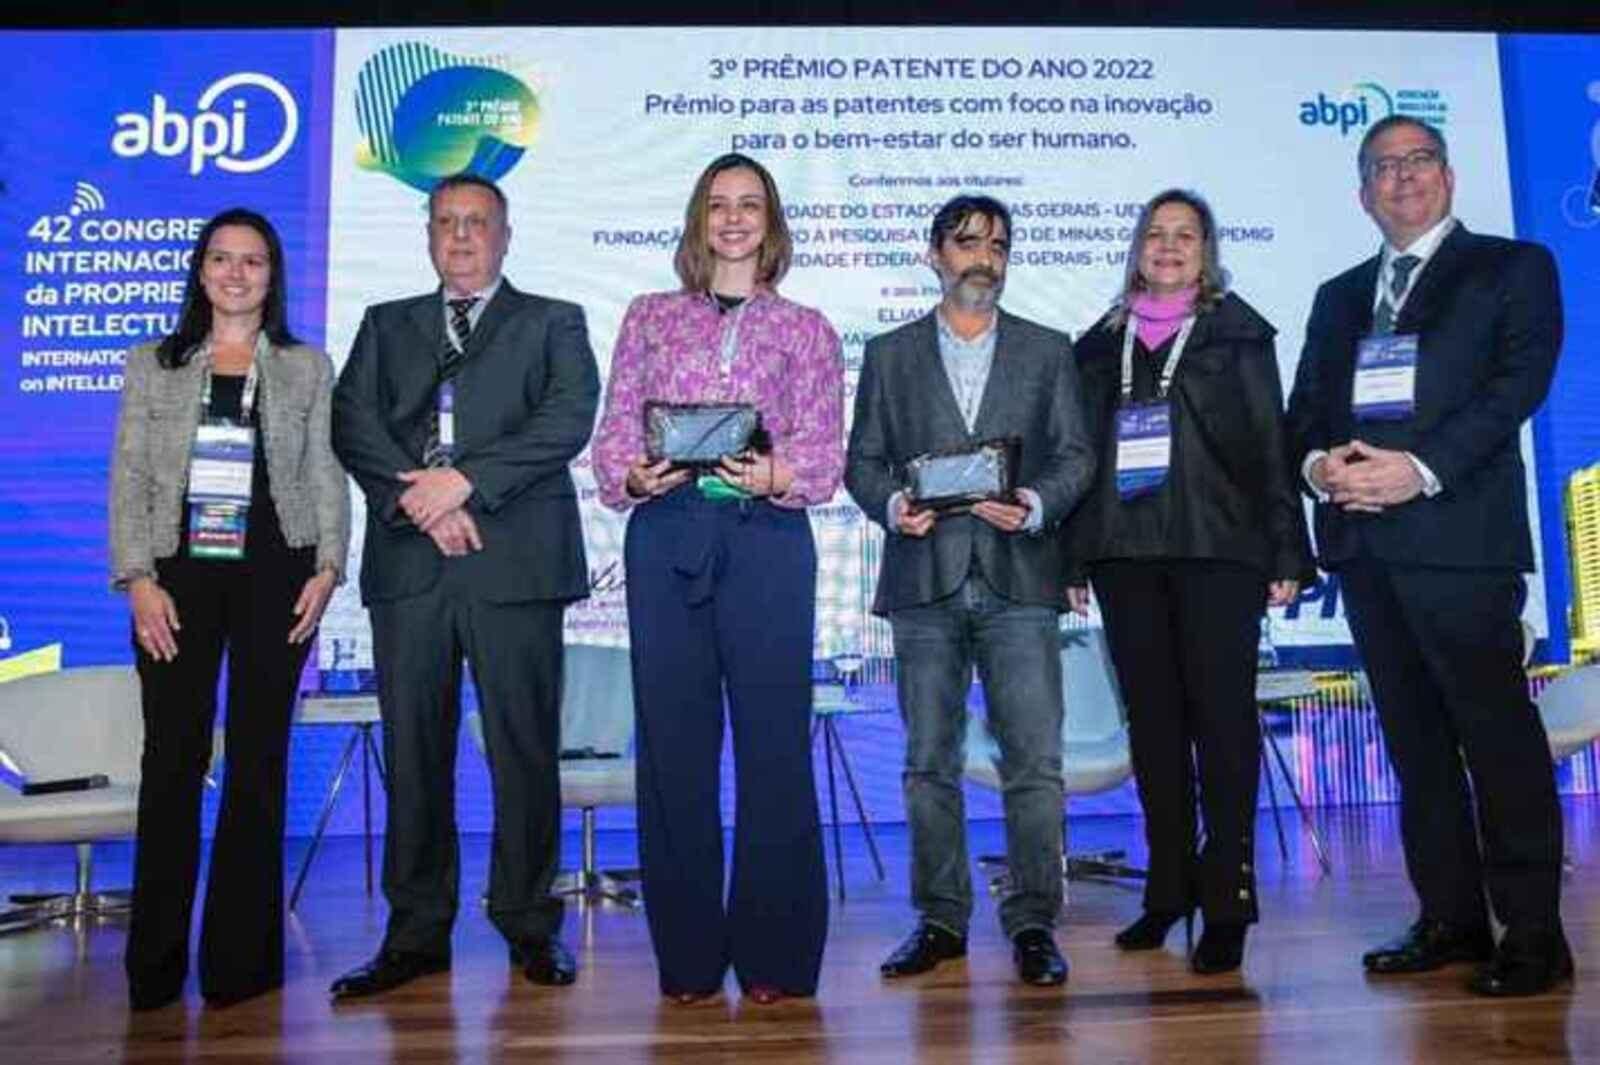 Pesquisadores da UFMG venceram um prêmio de patente do ano ao apresentarem um tecido inteligente que controla a temperatura corporal